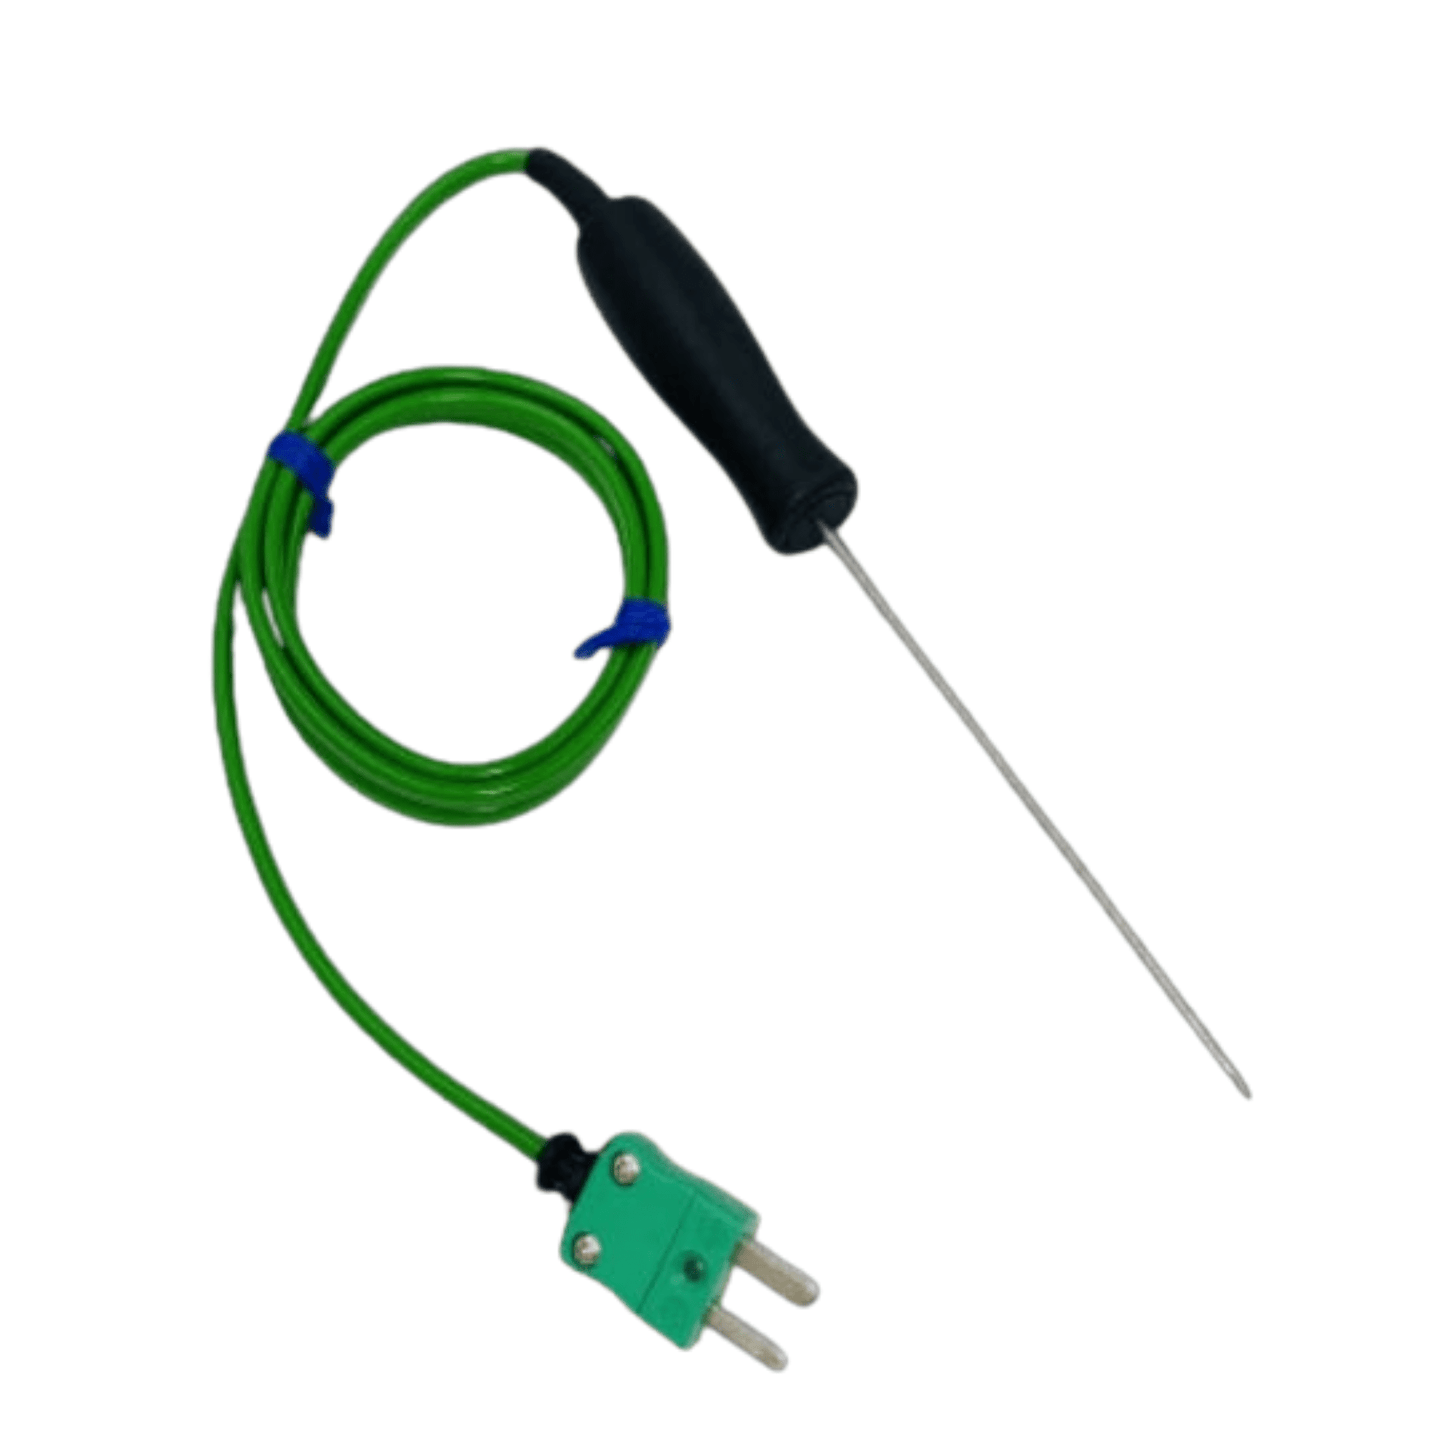 Une Sonde de pénétration miniature à piquer verte avec un fil attaché, parfaite pour les aliments délicats par Thermomètre.fr.